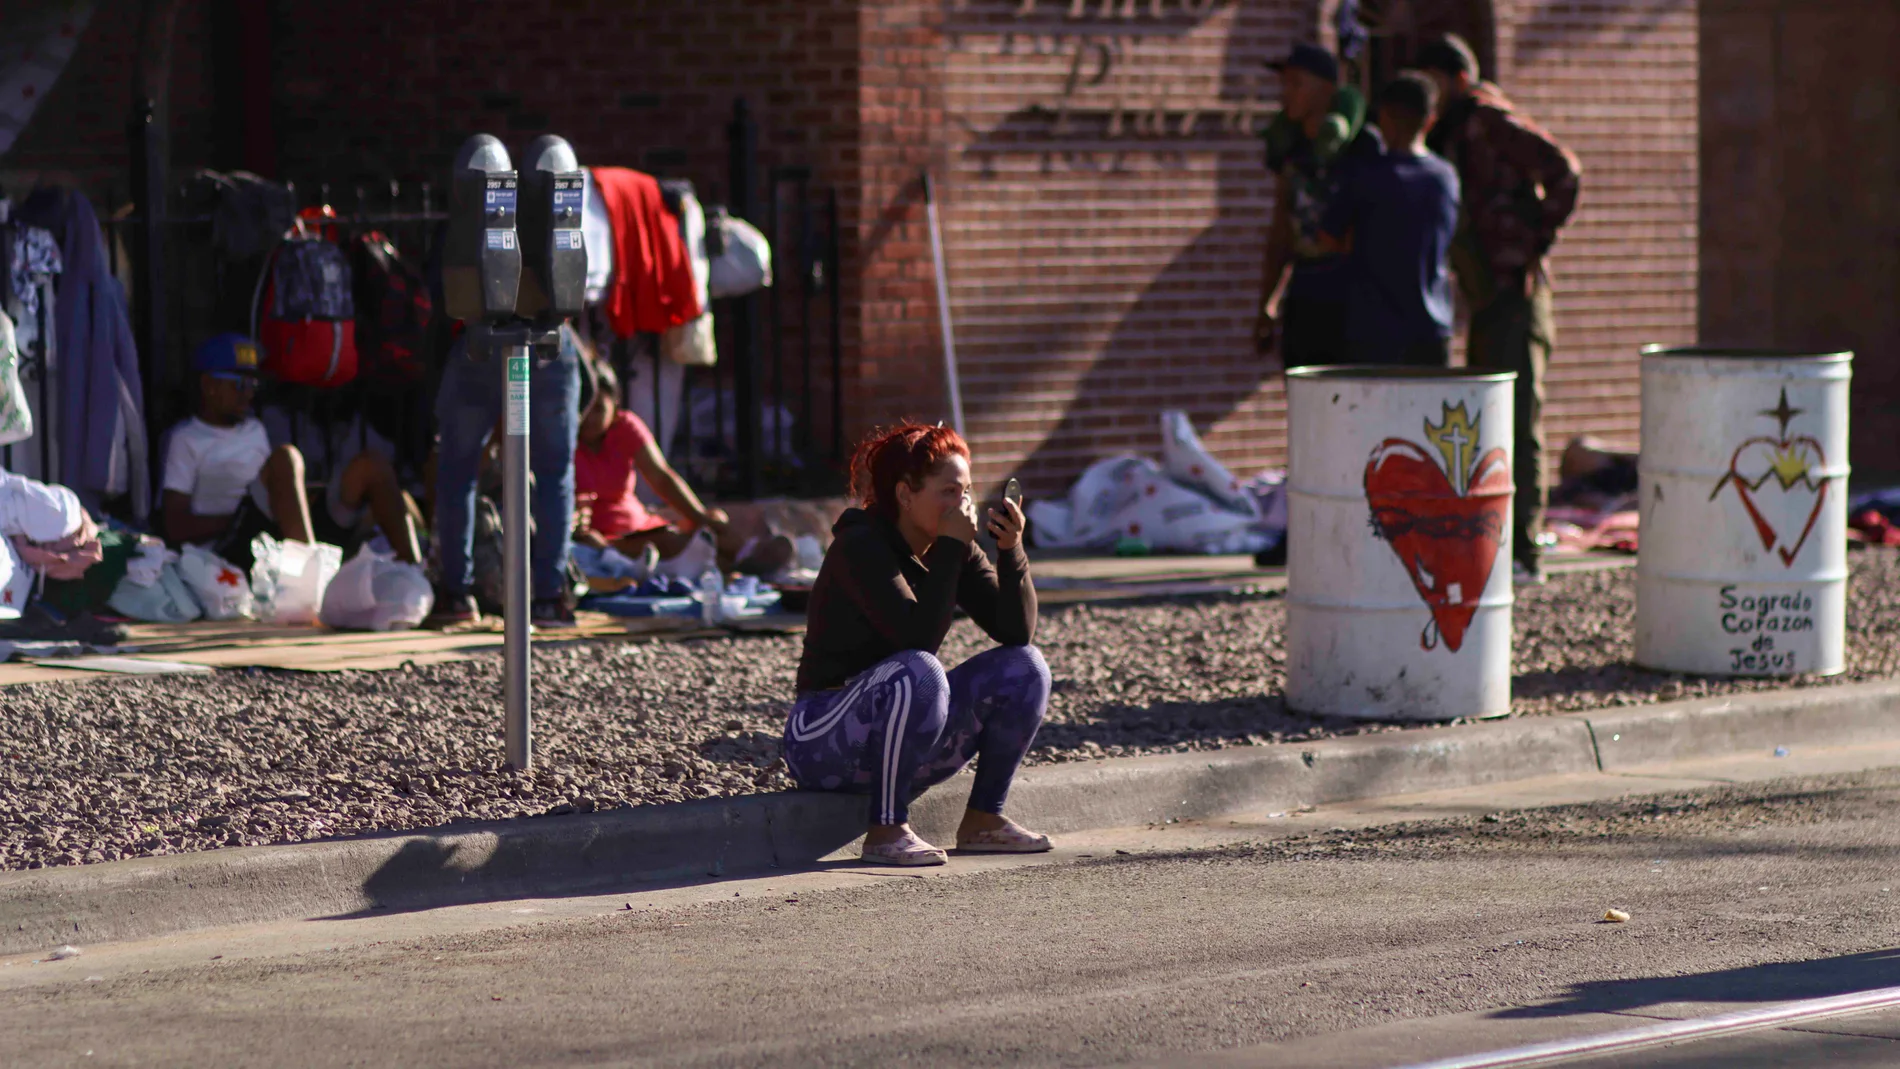  Fotografía de una persona migrante mientras descansa hoy en una acera en El Paso, Texas (EE UU)